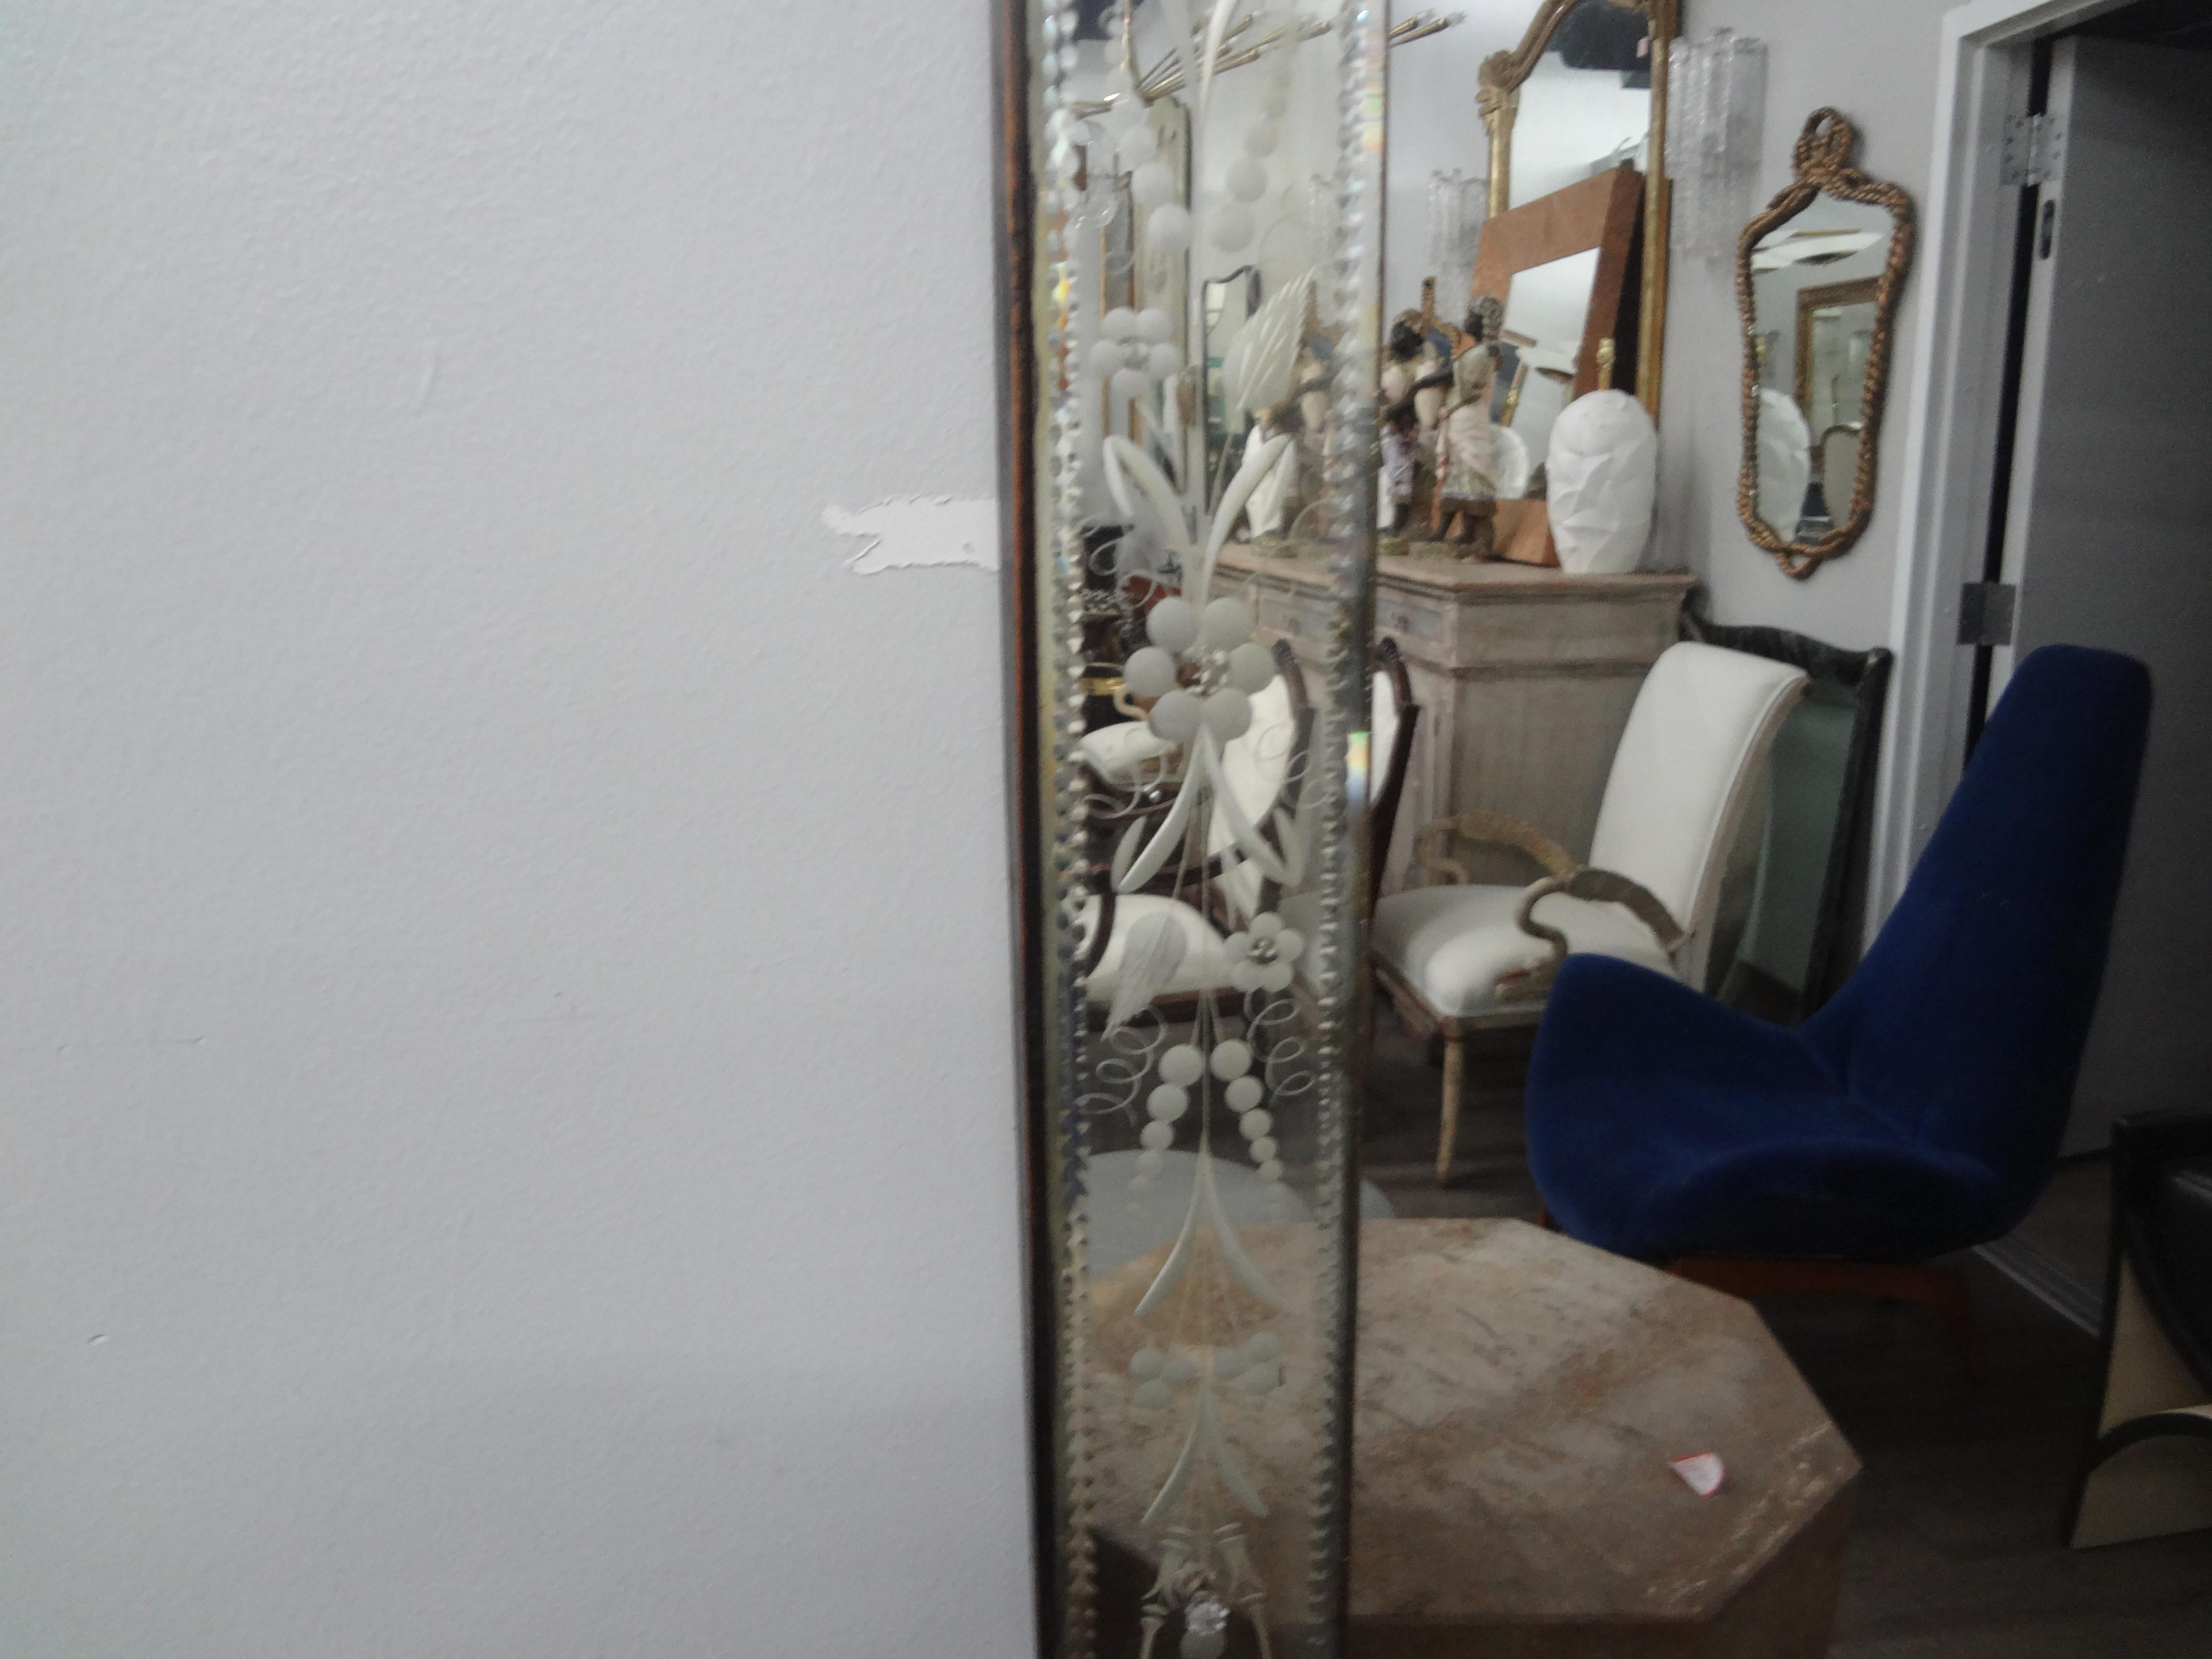 Großer venezianischer Spiegel, geätzt und abgeschrägt 
Italienischer abgeschrägter Spiegel im Art-Déco-Stil aus Venedig. Dieser atemberaubende venezianische Spiegel im Hollywood-Regency-Stil hat eine rechteckige Form und kann sowohl vertikal als